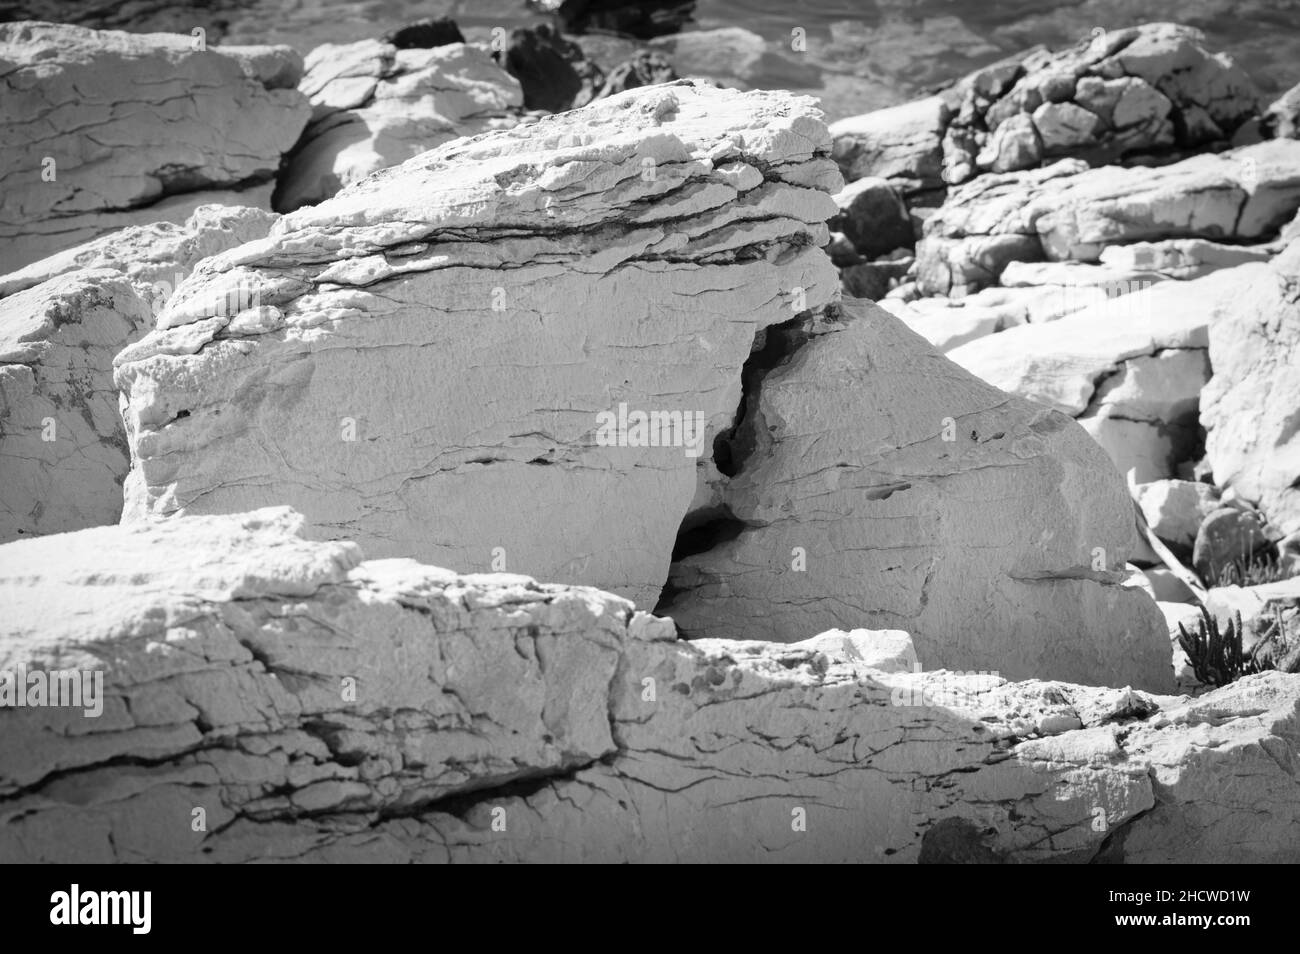 Rocce calcaree della costa adriatica, forme e formazioni insolite, bianche e nere Foto Stock